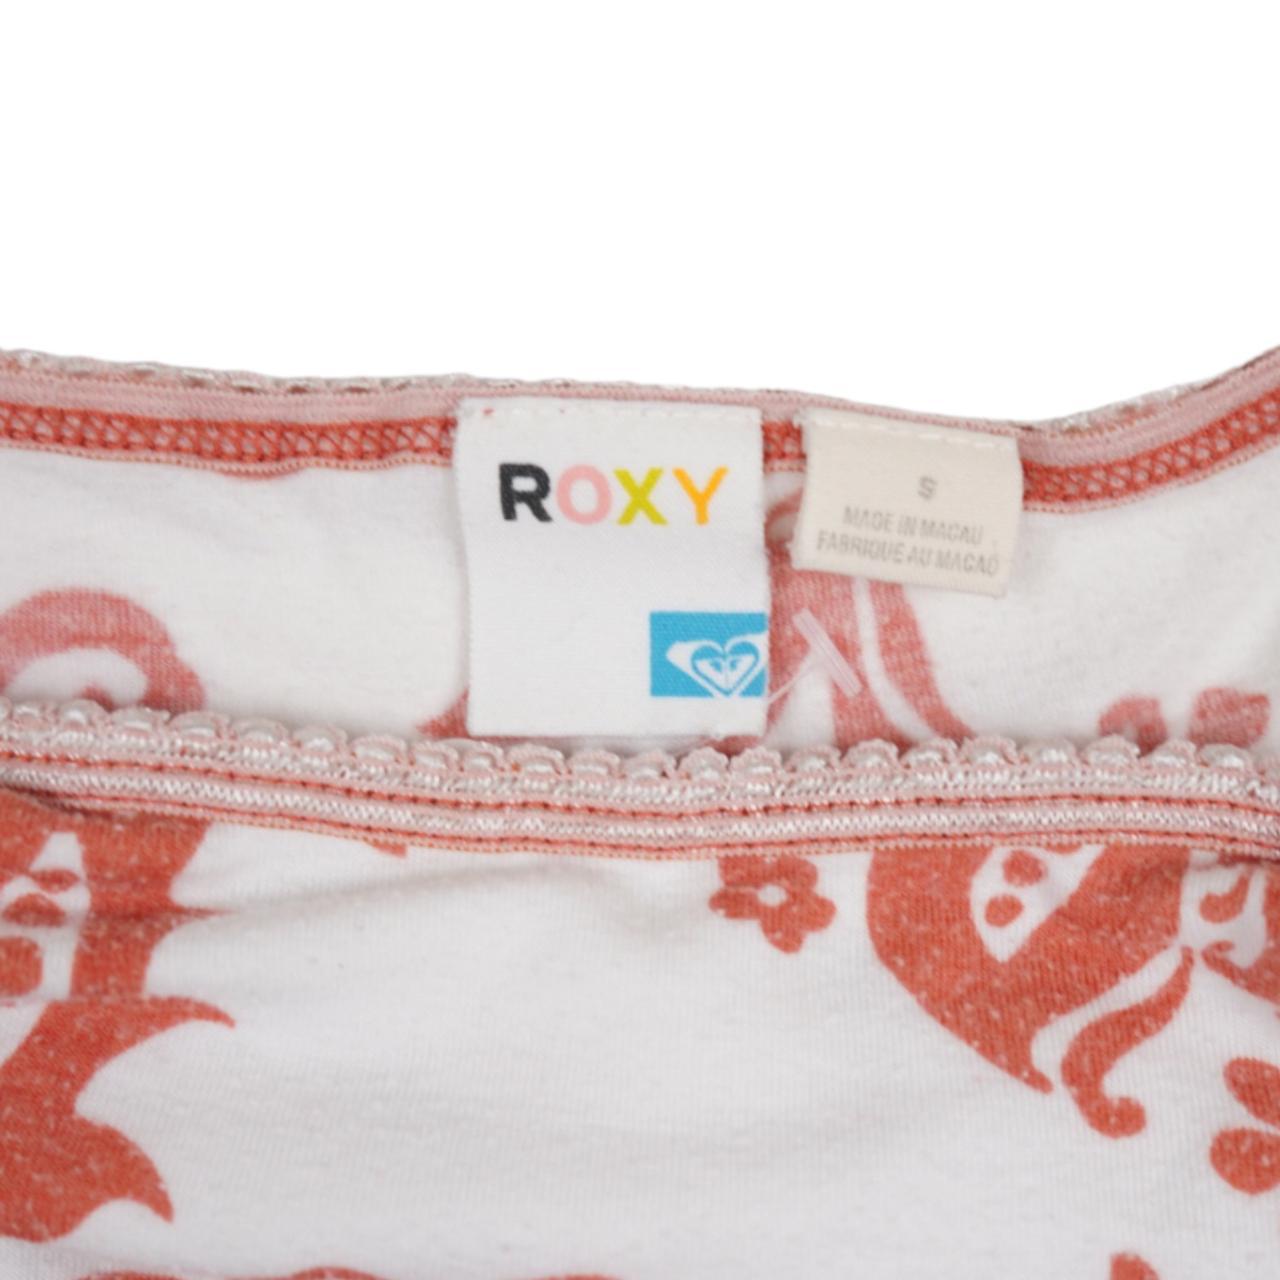 Roxy Women's White and Orange Vest (4)